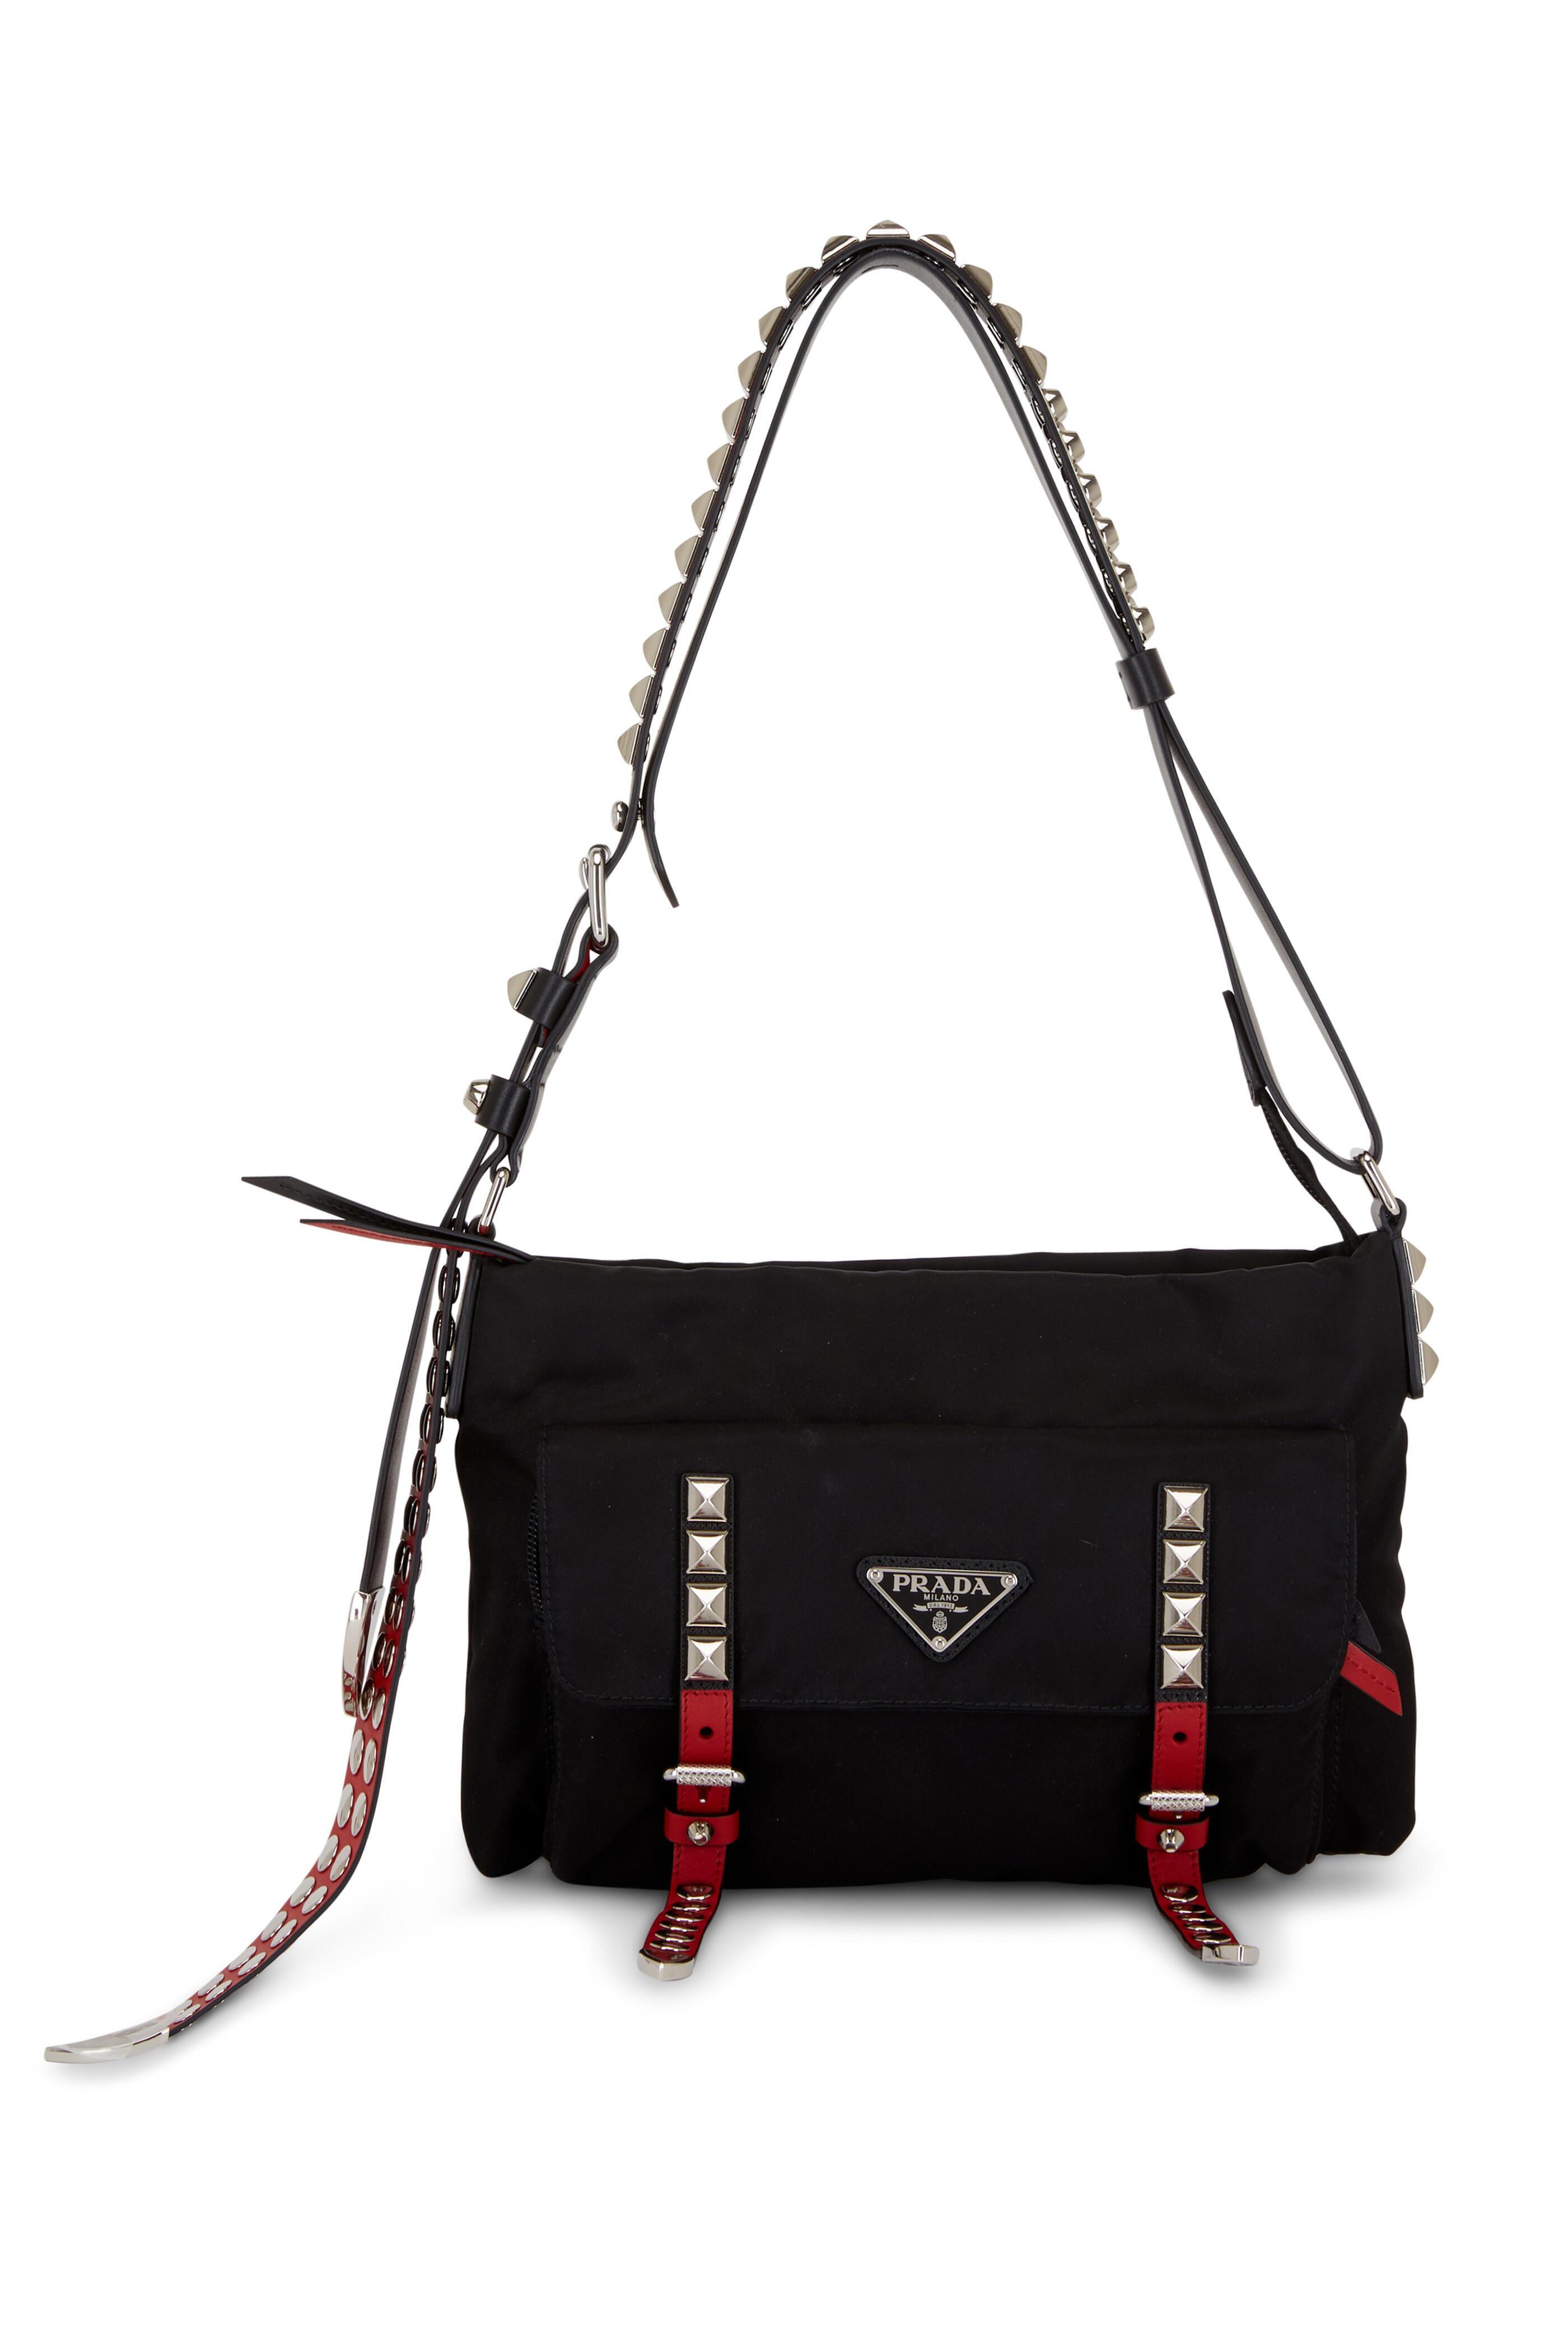 Black Prada Nylon Top Handle Bag